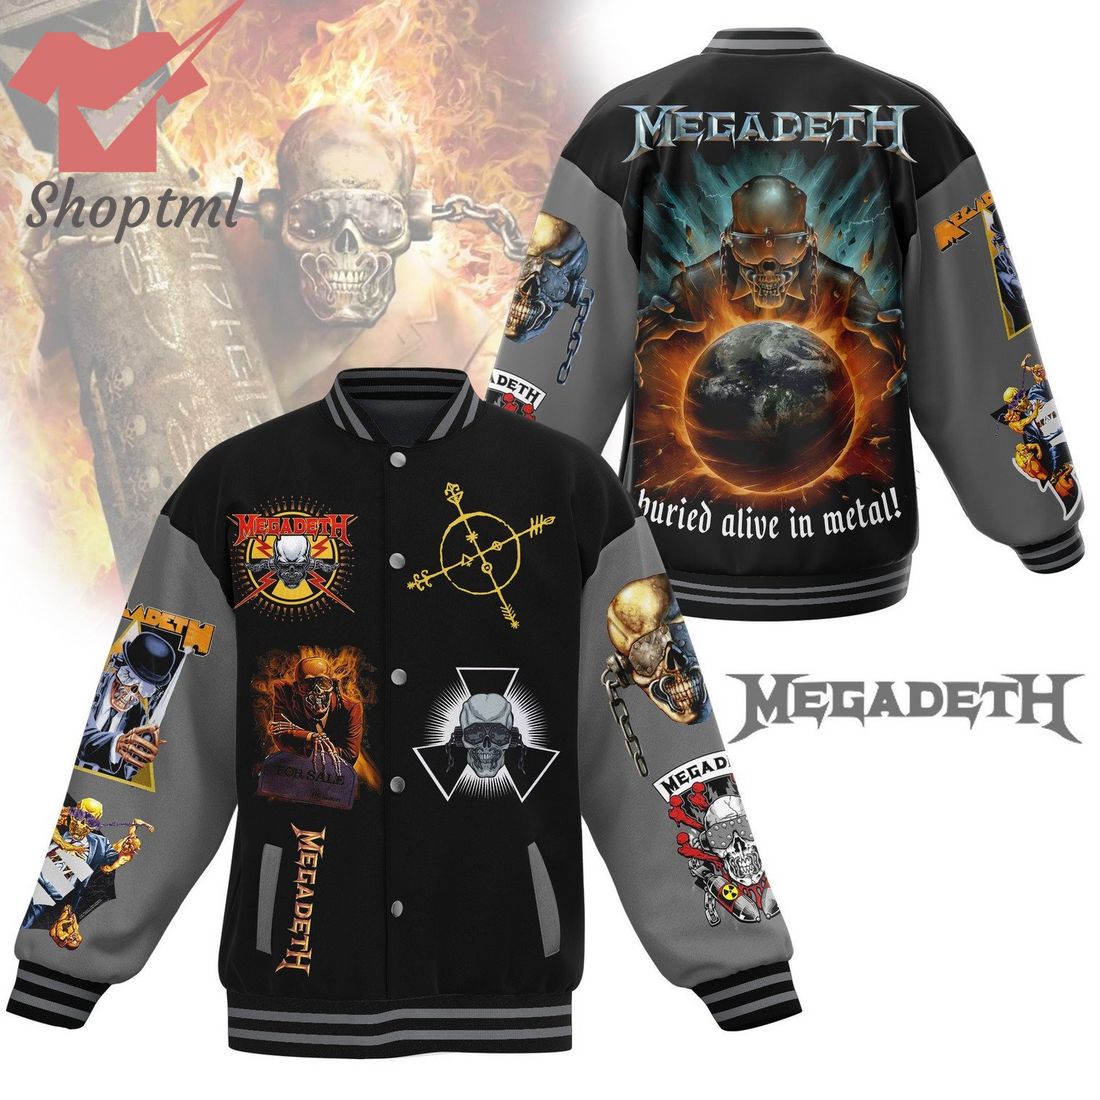 Megadeth buried alive in metal baseball jacket